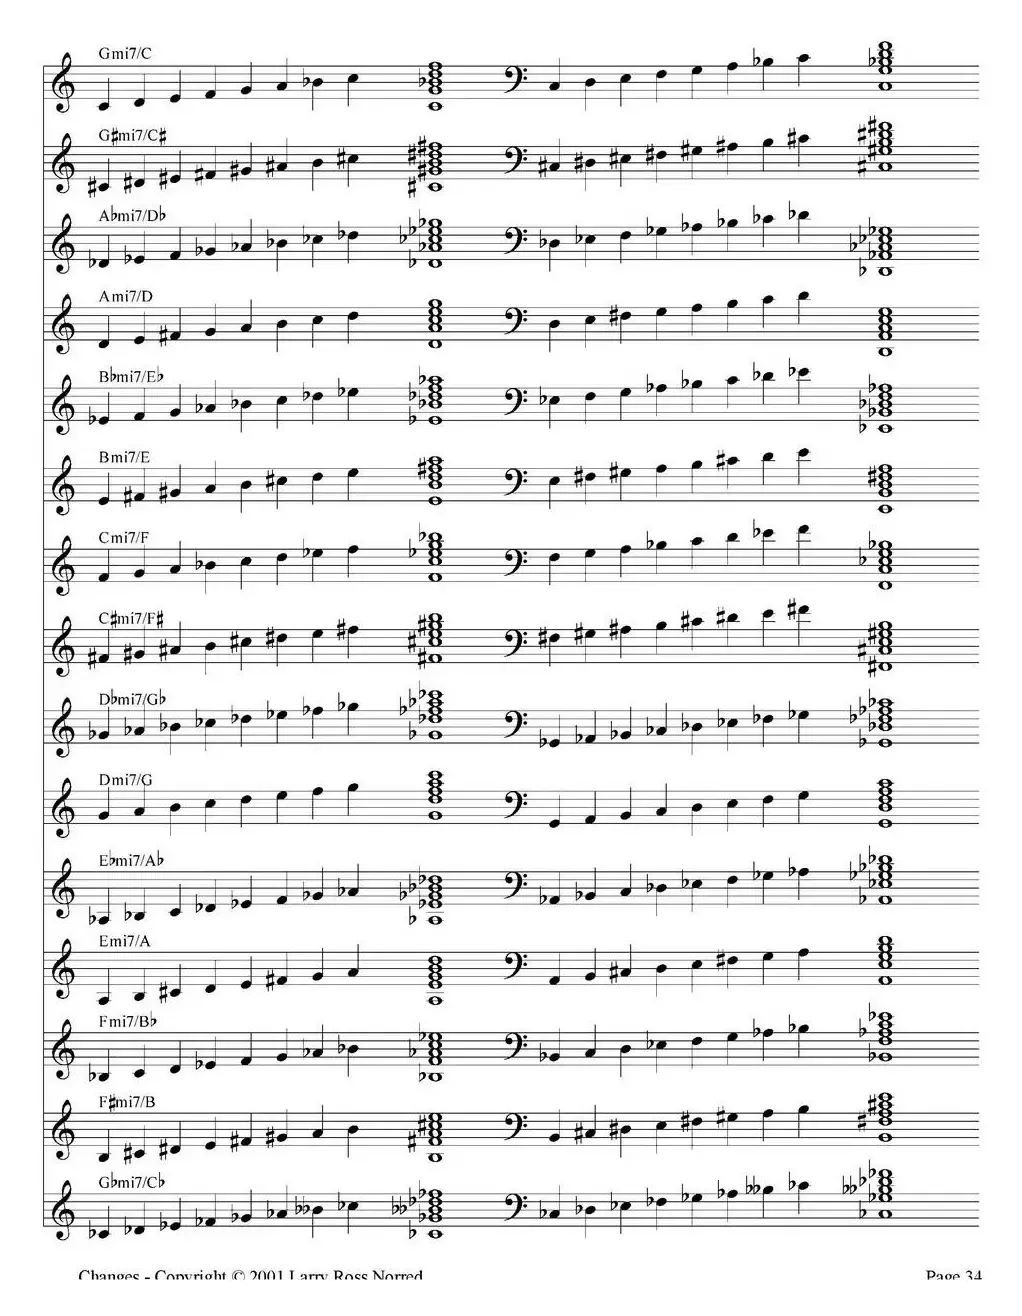 Changes（爵士乐和弦教材）（P21-40）